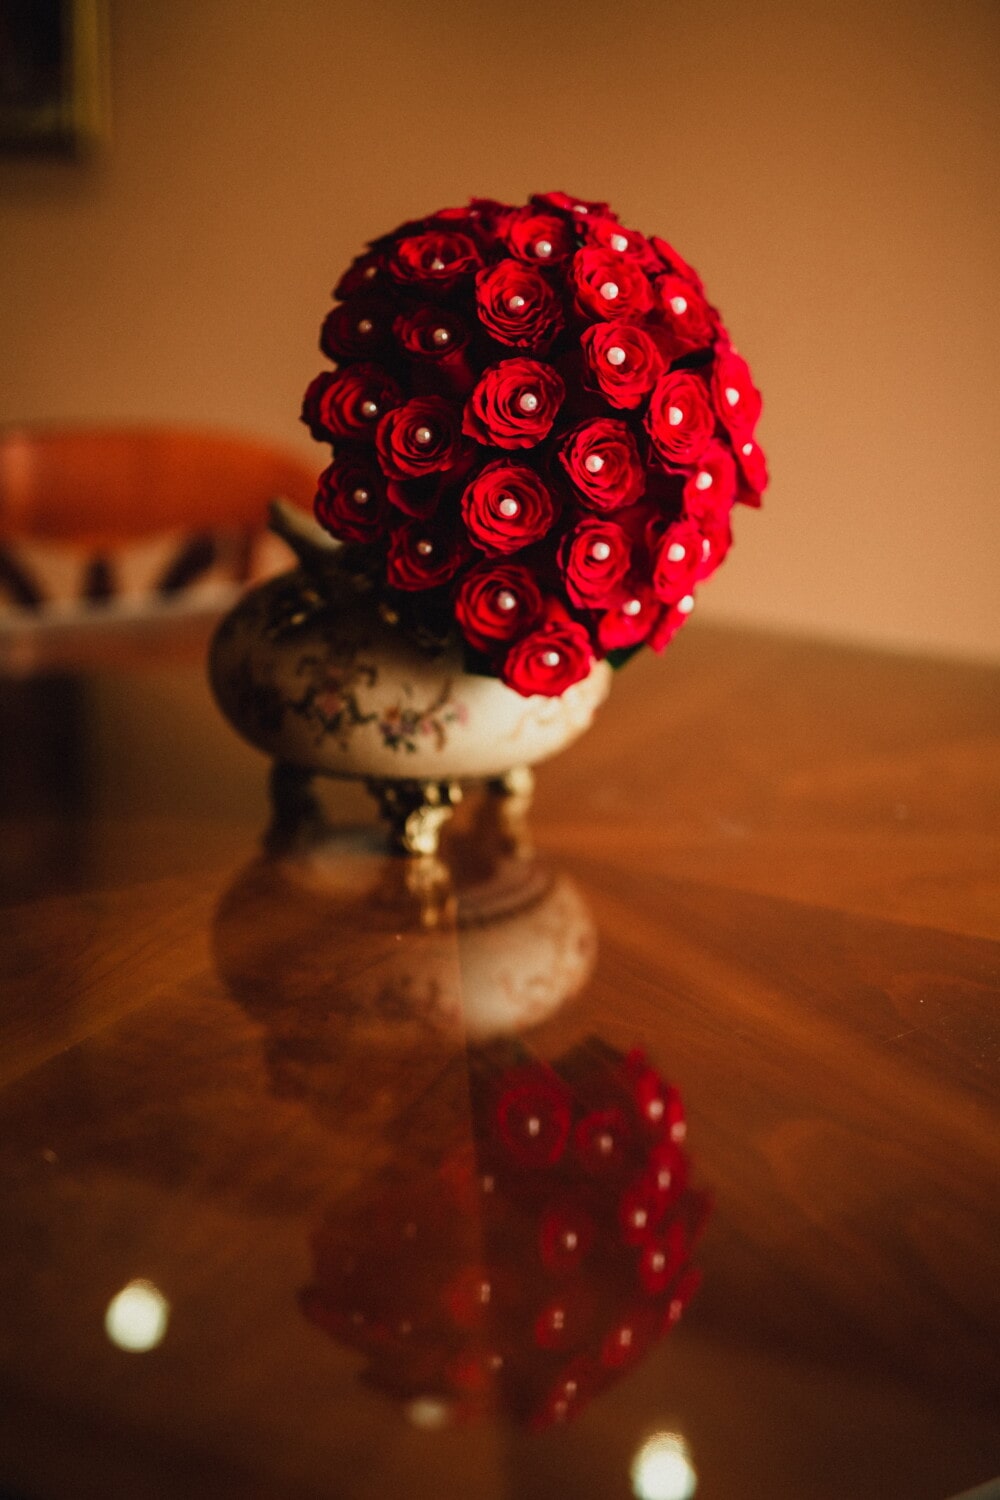 スティル ・ ライフ, 間近, 赤, バラ, 花束, 花瓶, 室内装飾, セラミックス, テーブル, 色